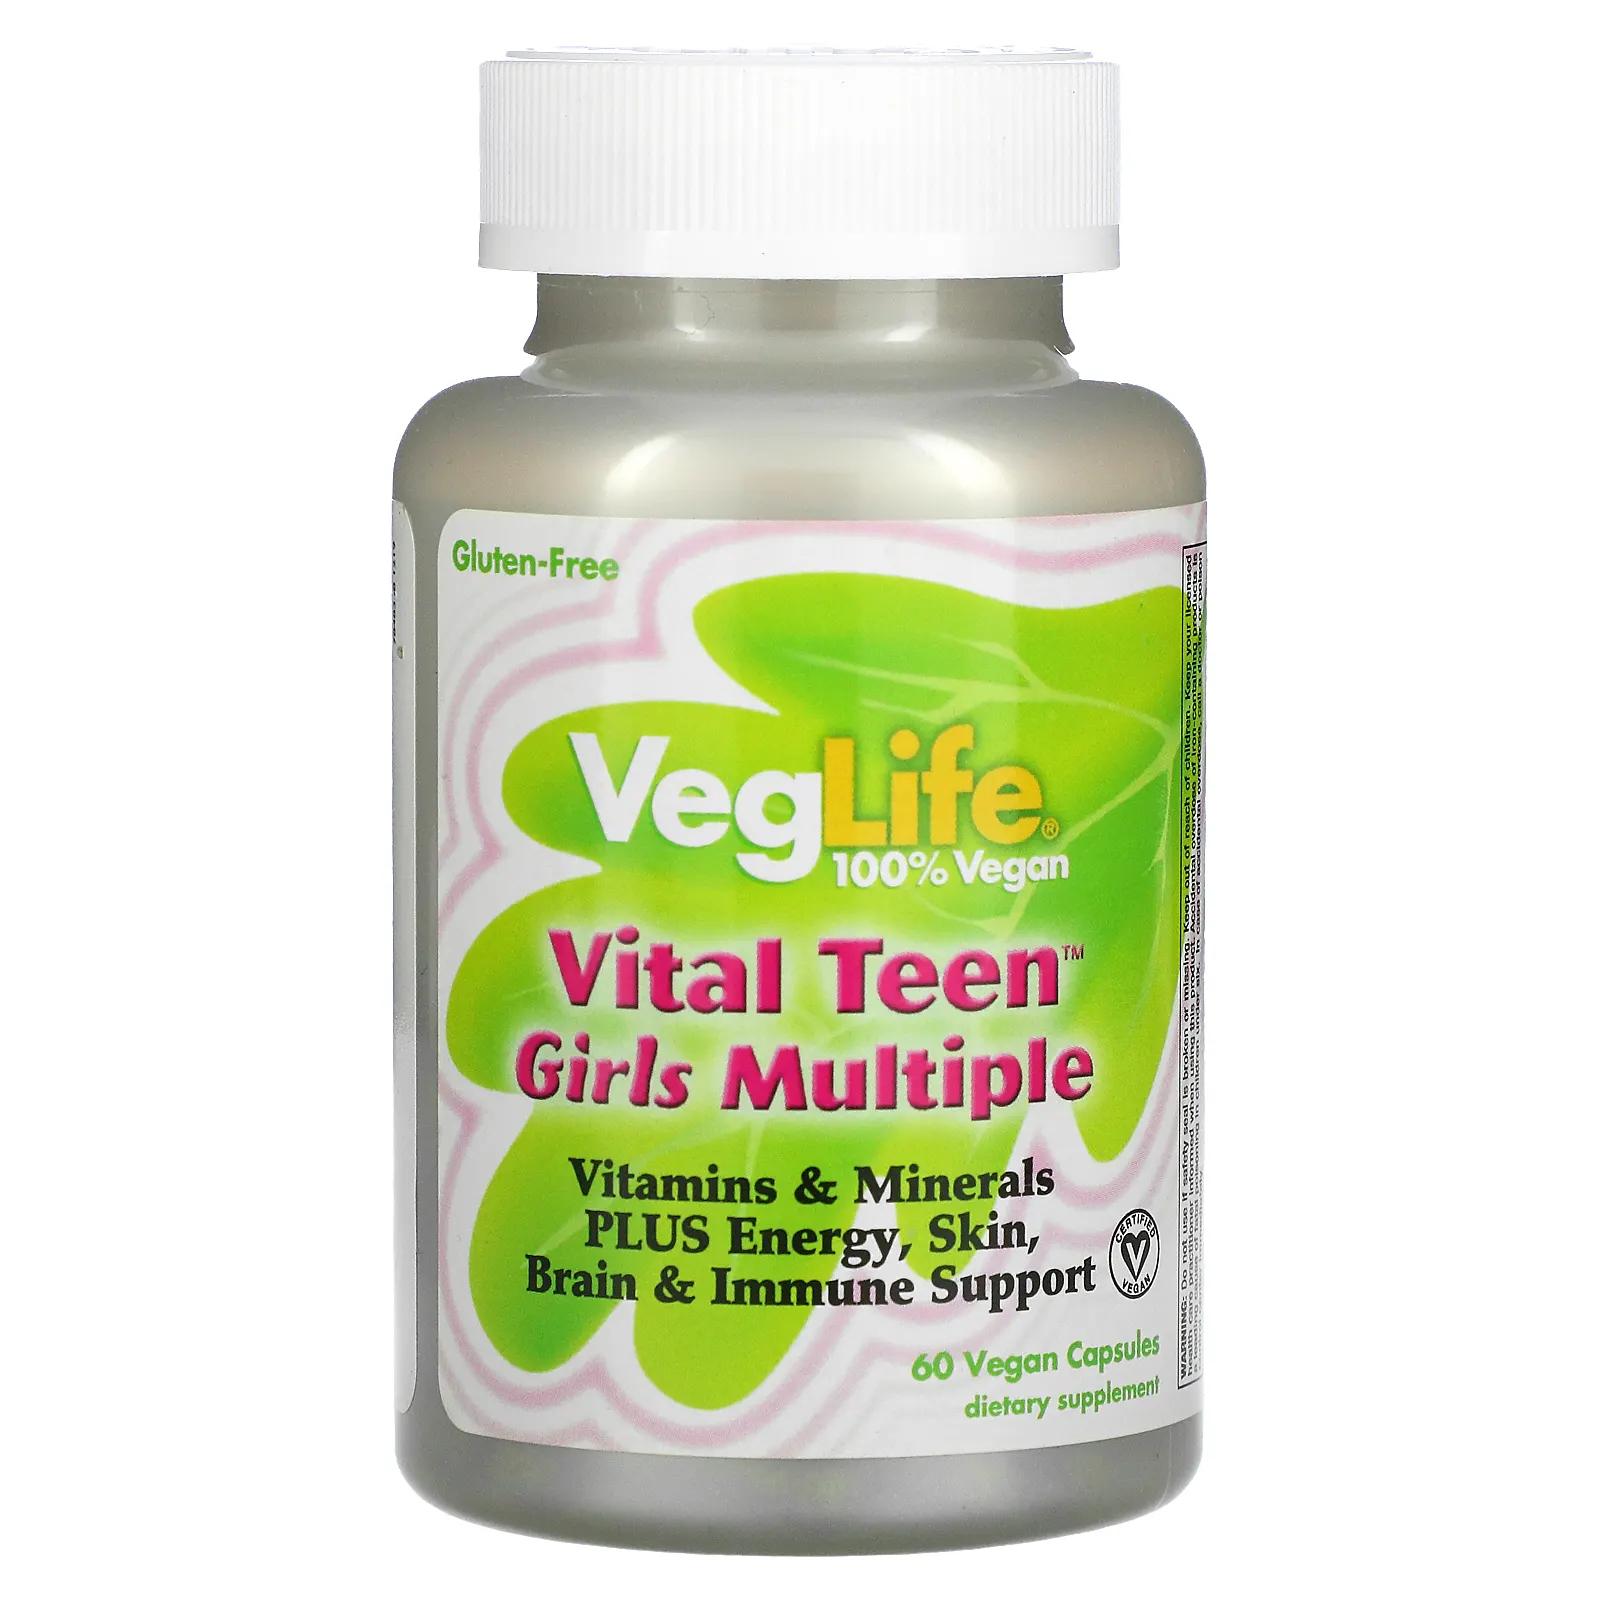 VegLife Vital Teen витаминный комплекс для девочек 60 вегетарианских капсул veglife vital teen витаминный комплекс для девочек 60 вегетарианских капсул